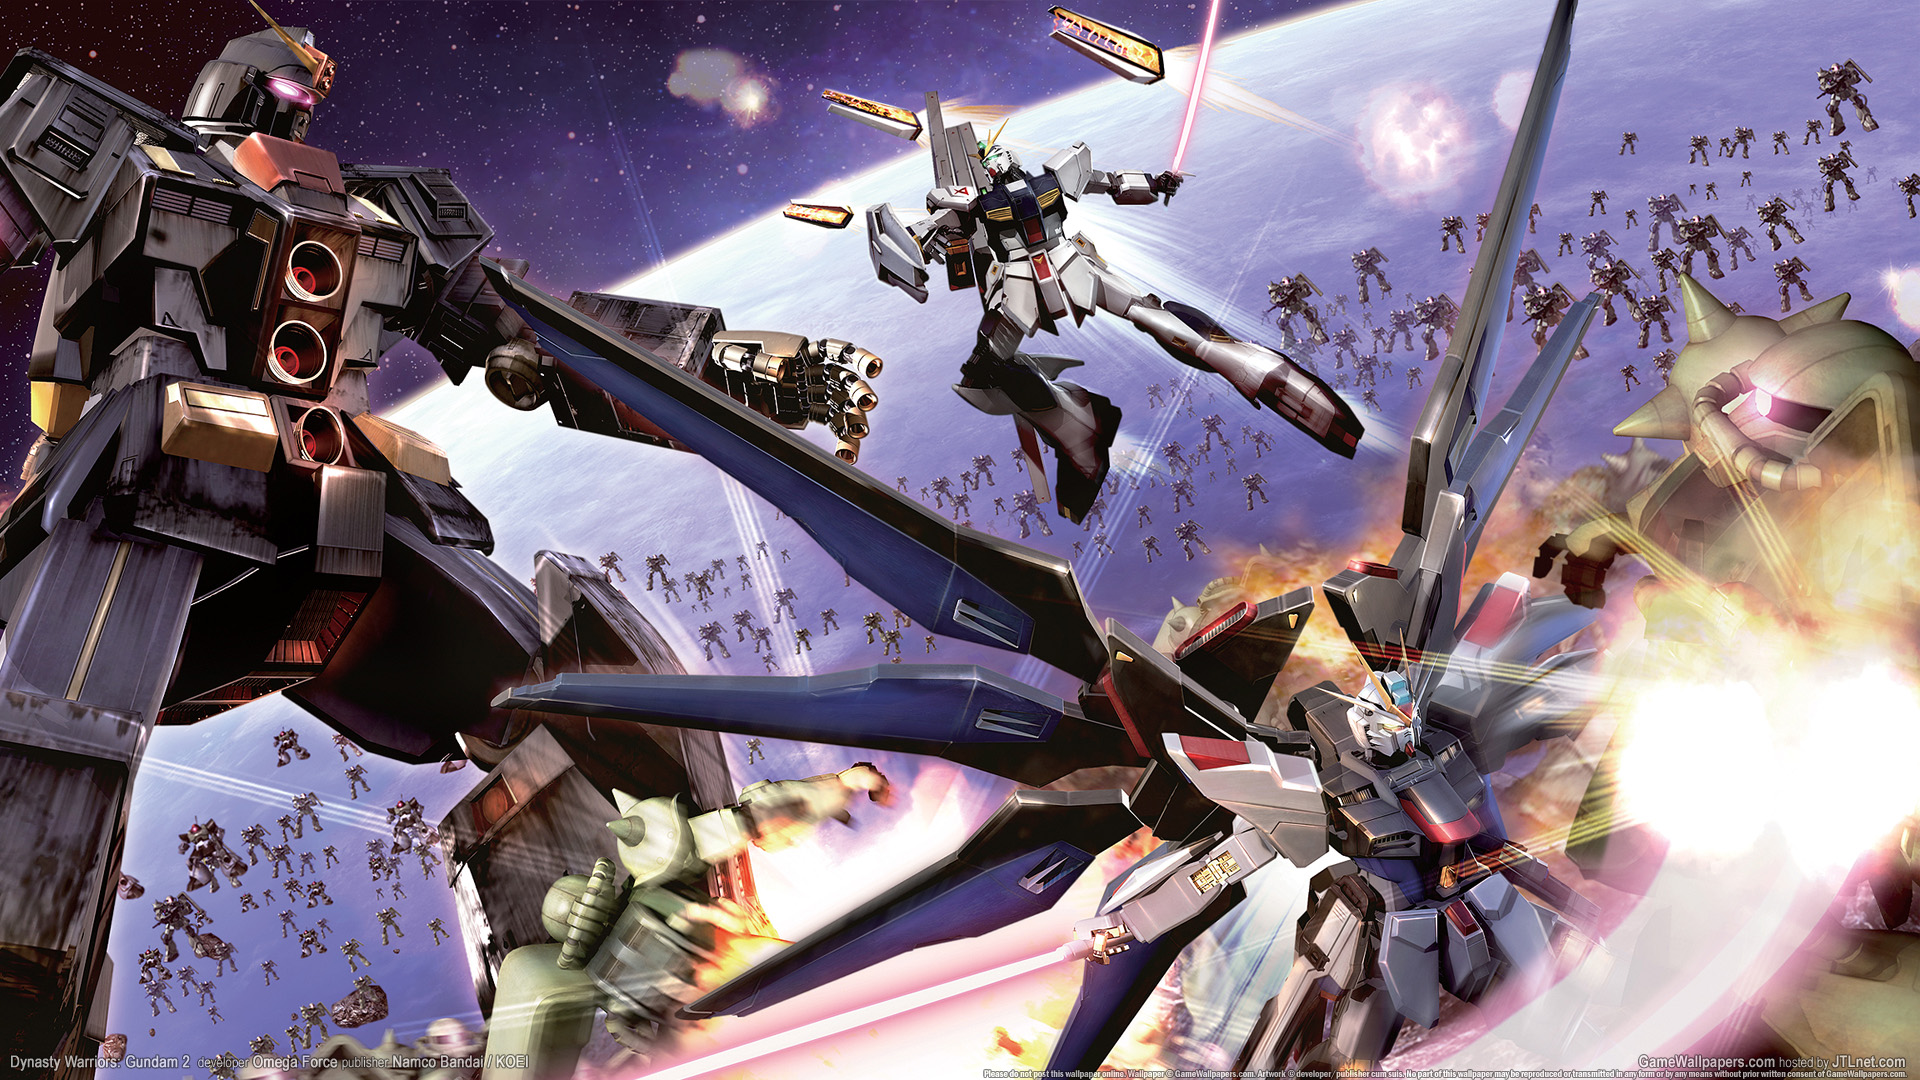 Dynasty Warriors: Gundam